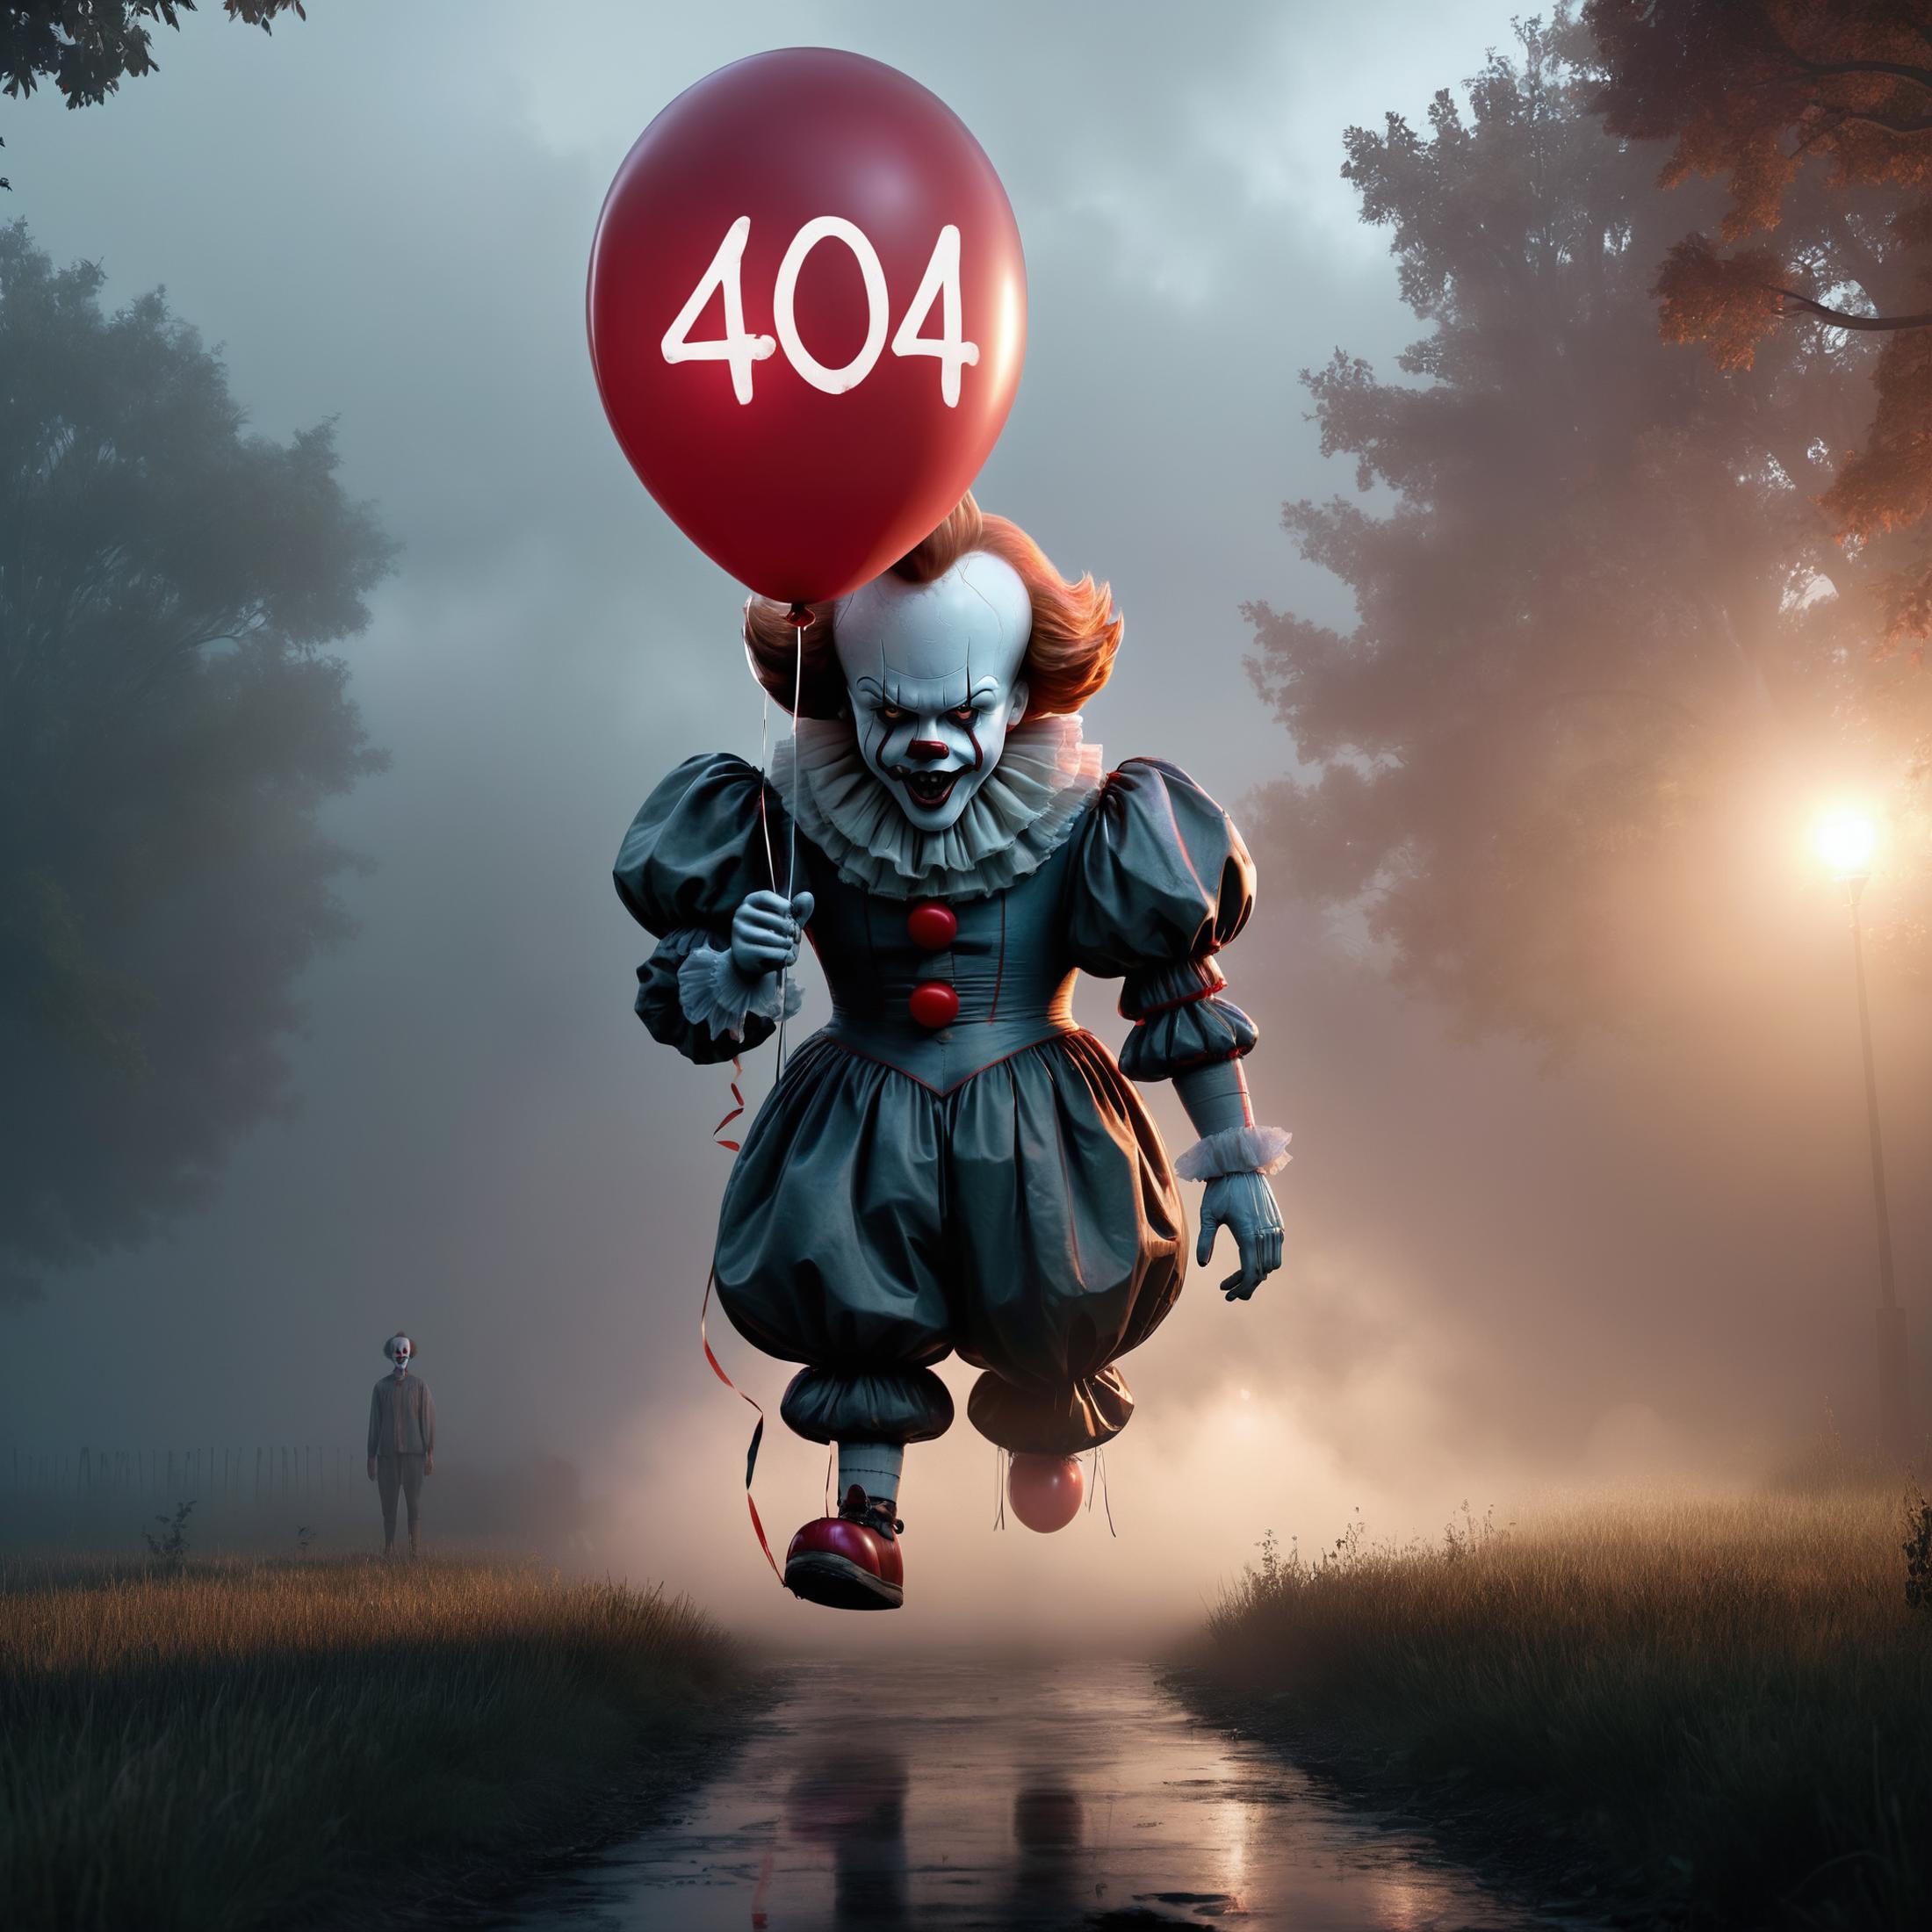 Creepy Clown Balloon Float - 404 Error - Frightening Scene